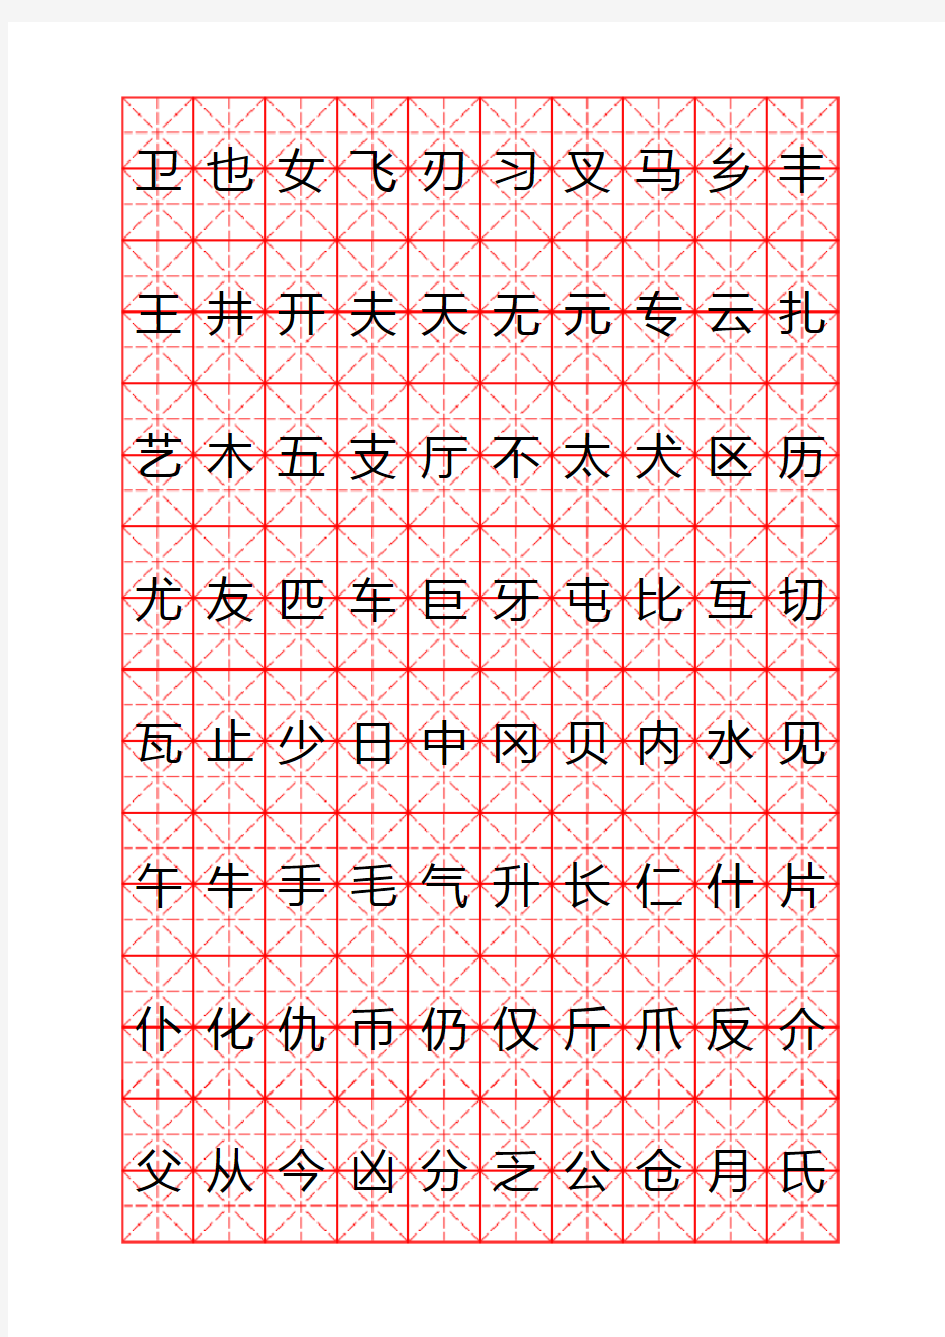 钢笔字帖柳体(米字格实笔画)常用汉字2500个